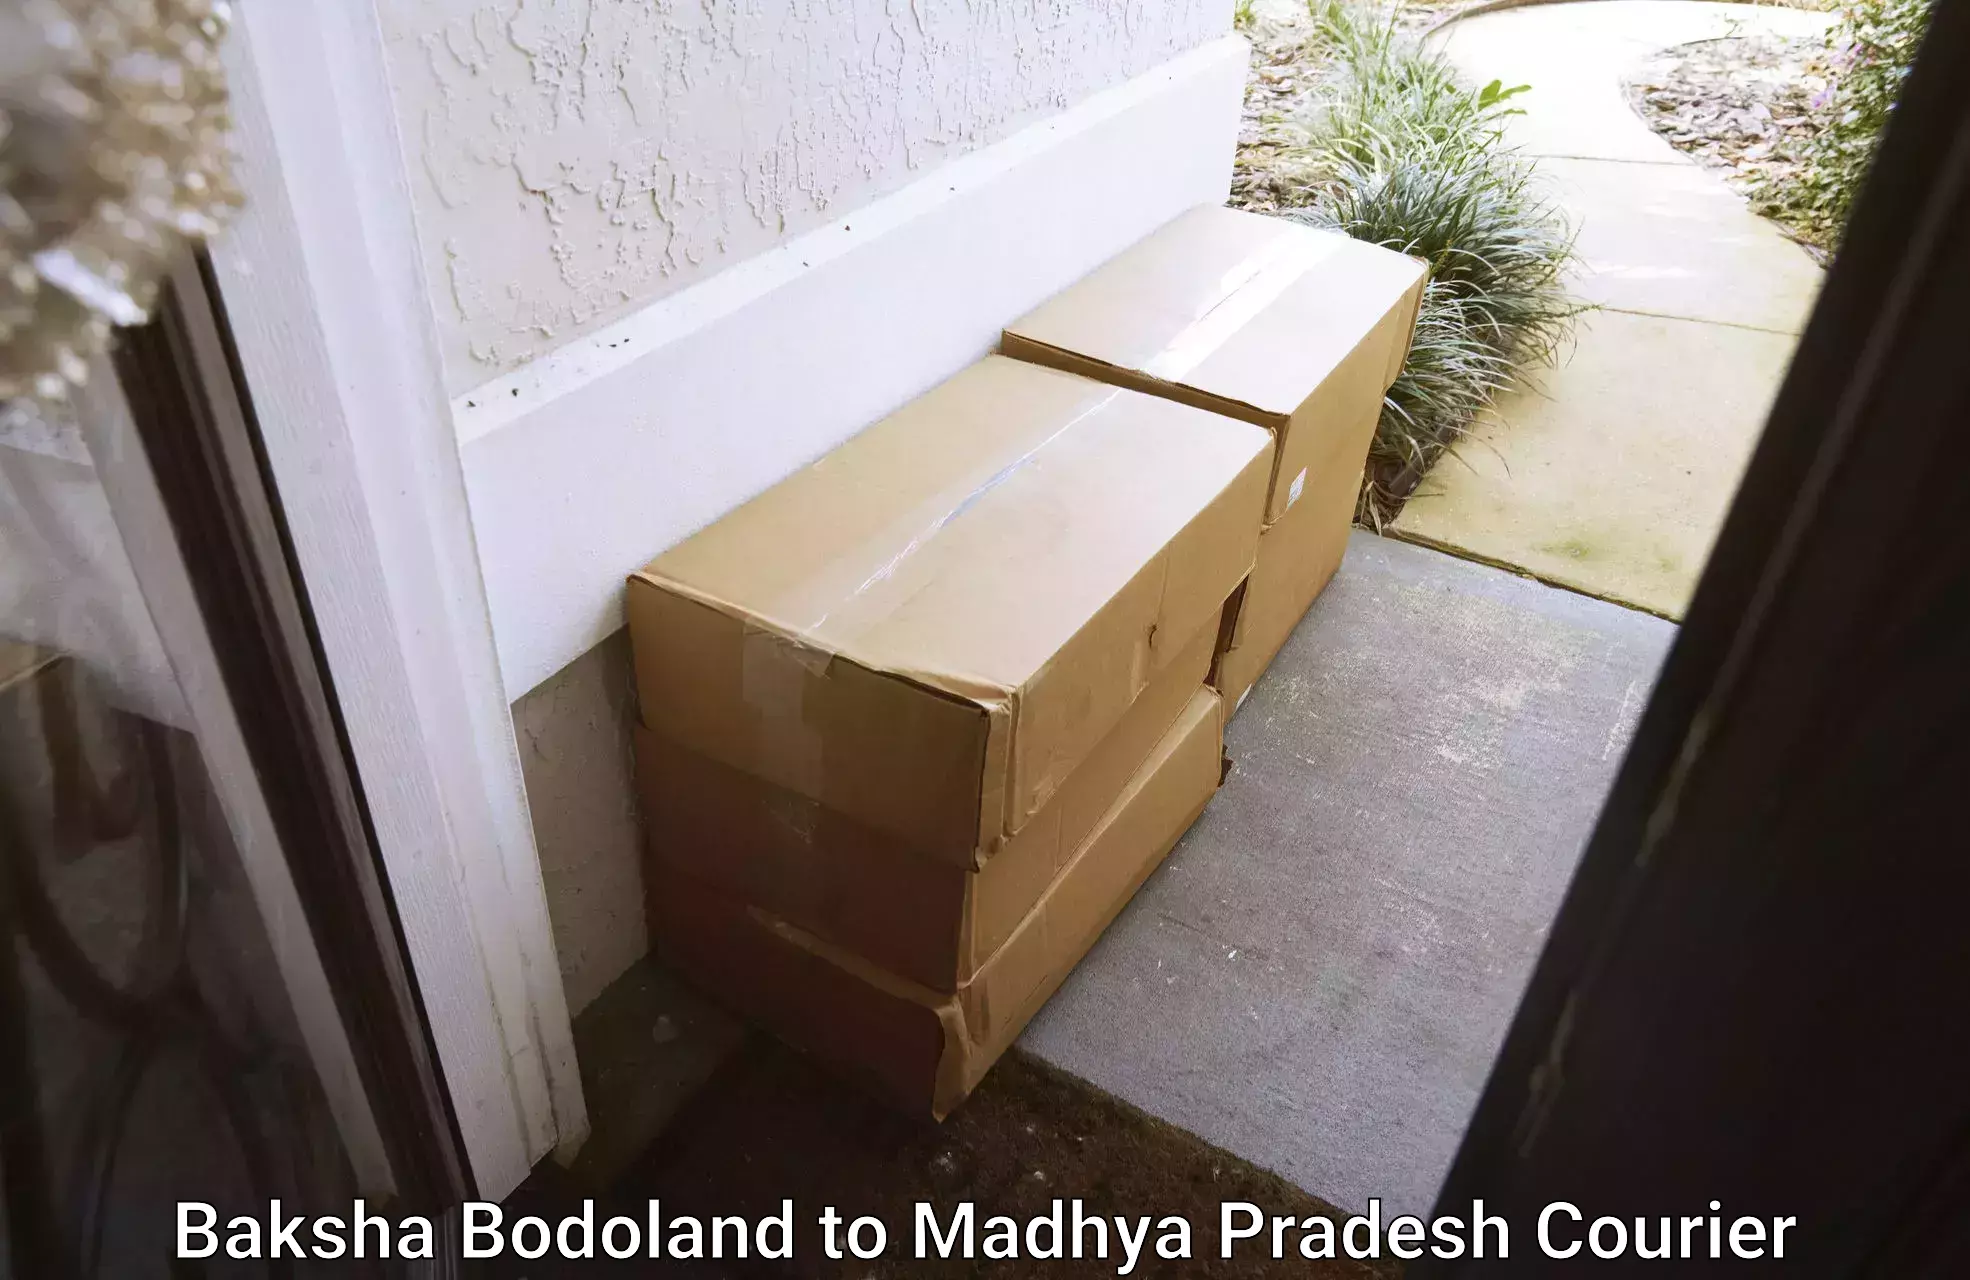 Professional courier services Baksha Bodoland to Jaisinghnagar